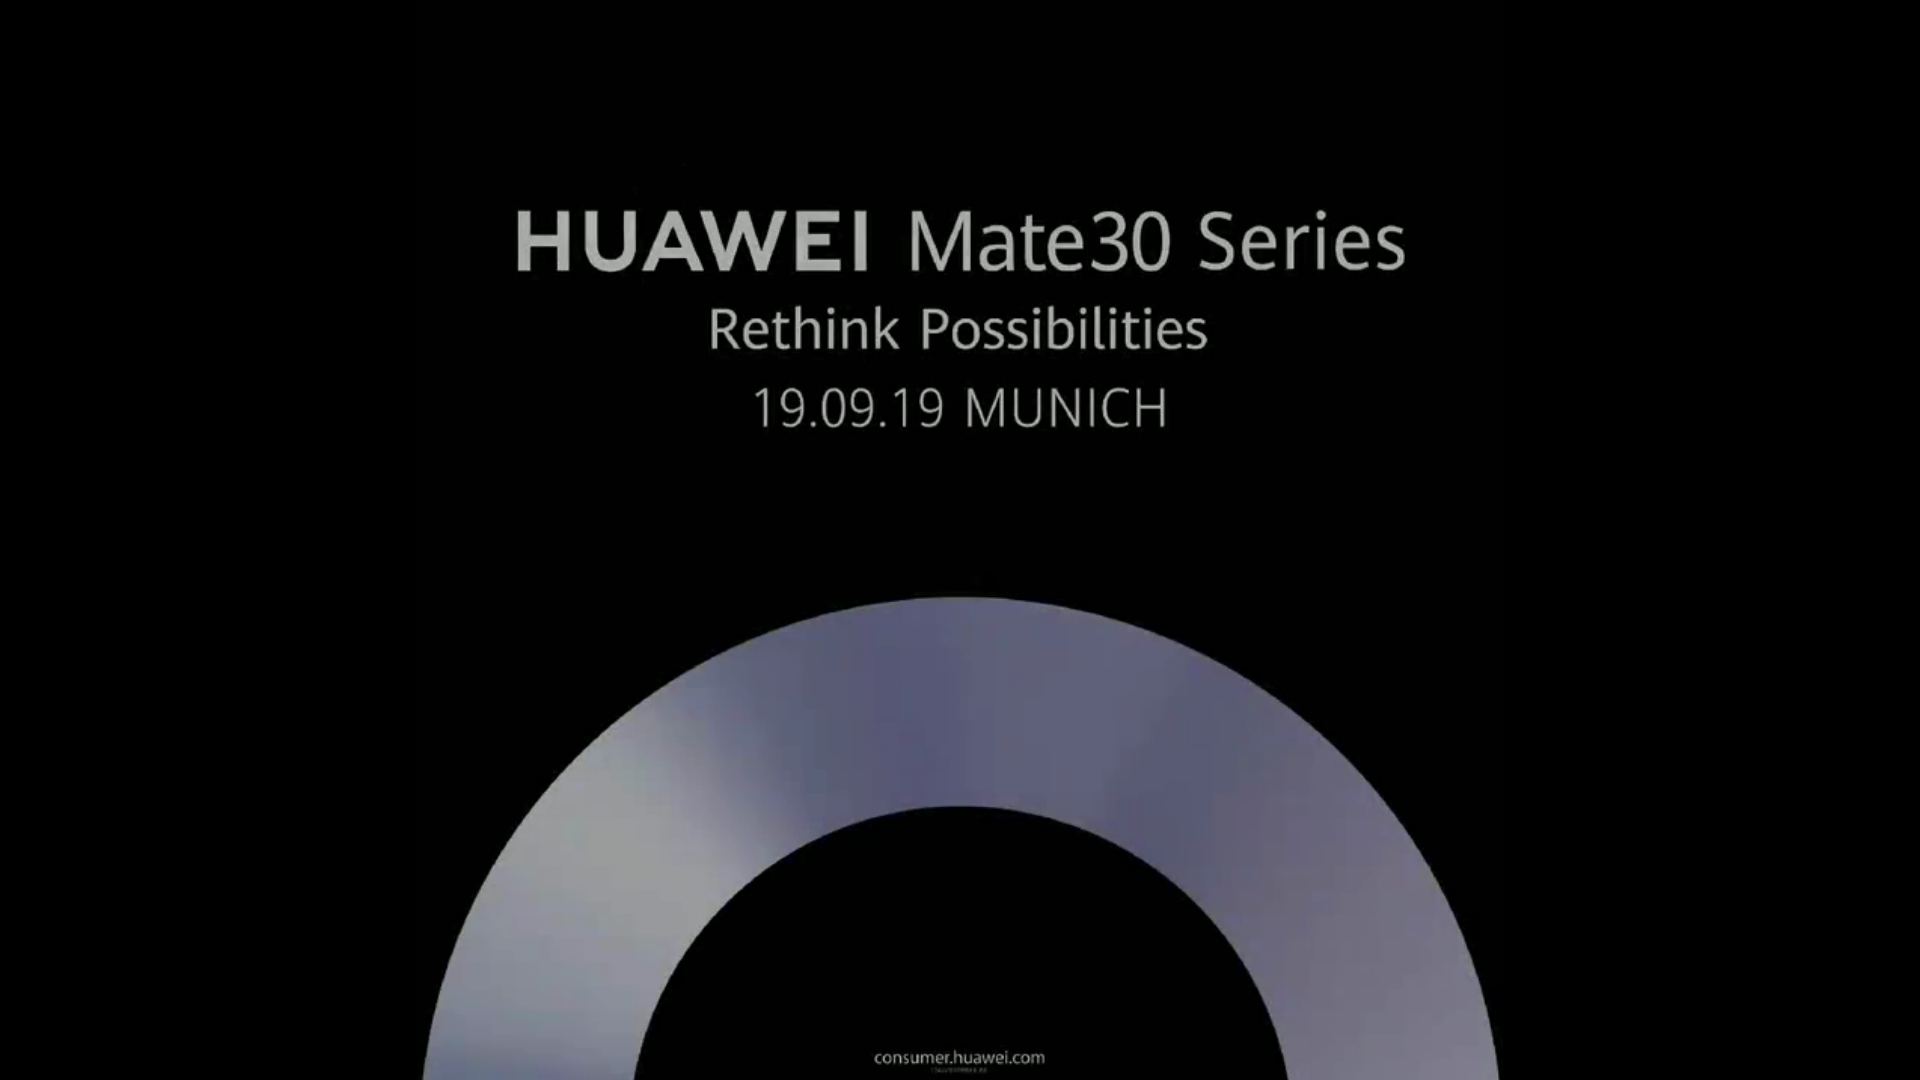 Huawei xác nhận Mate 30 series sẽ được ra mắt vào ngày 19/9